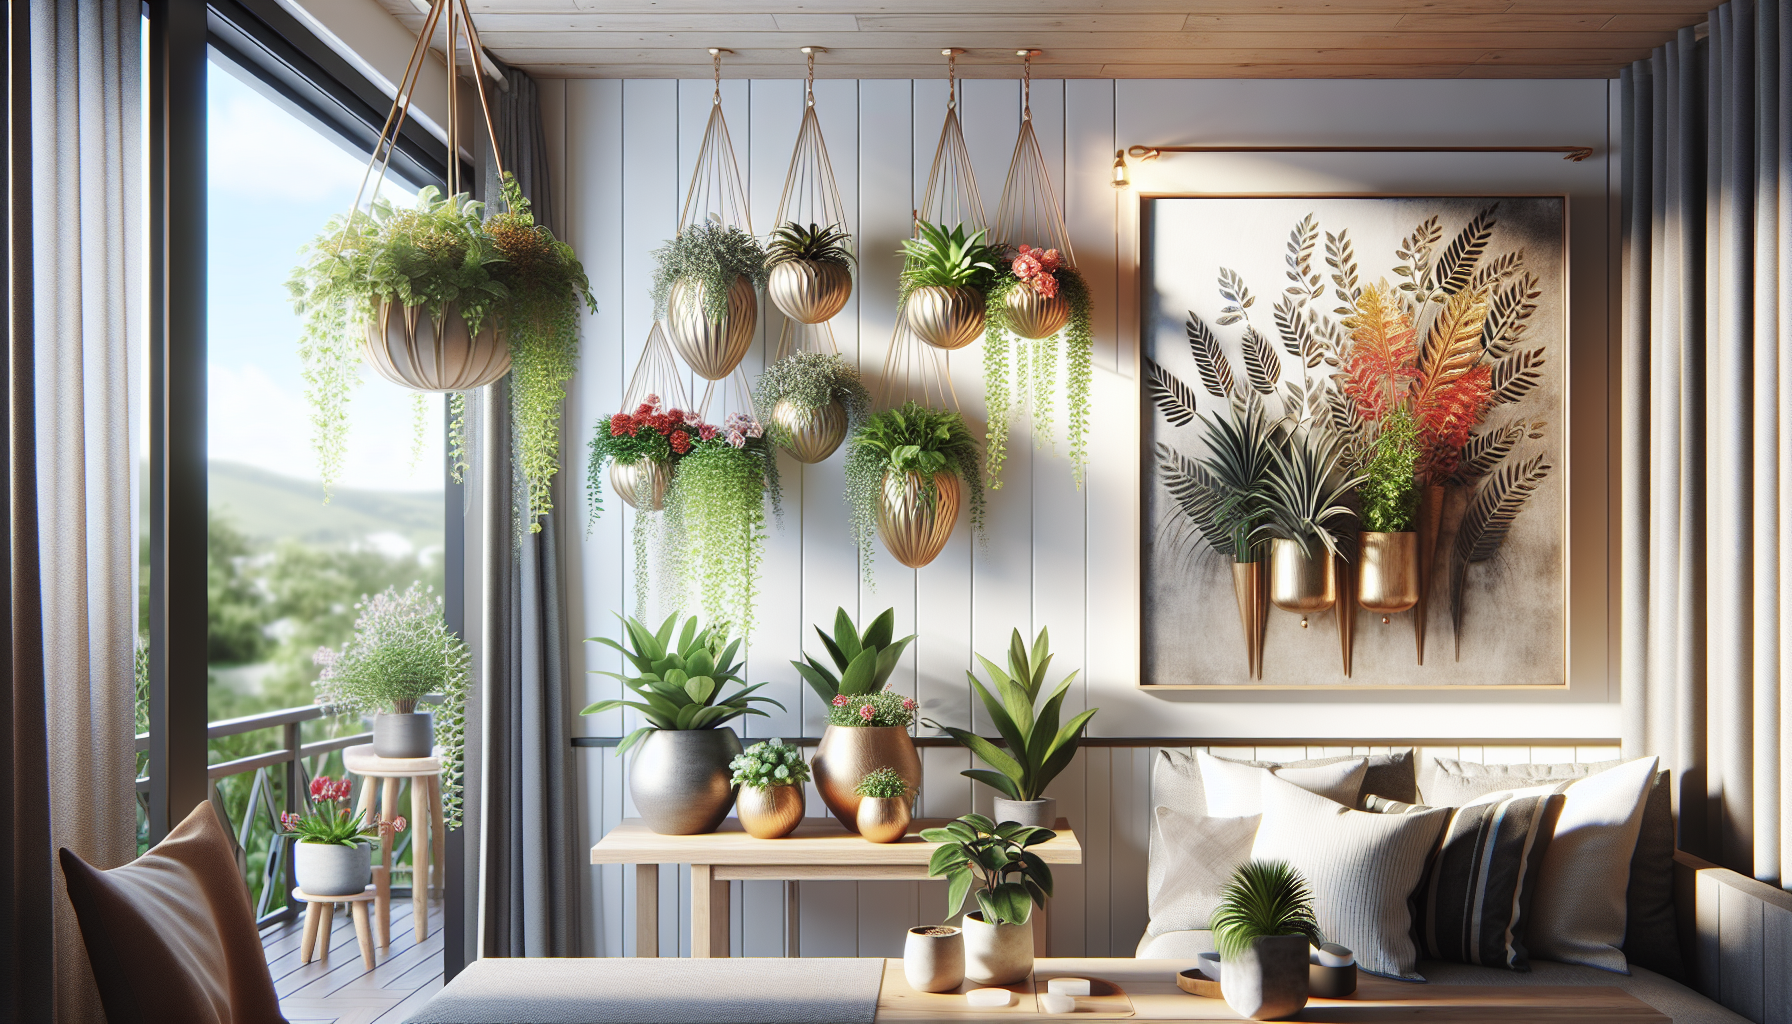 Macetas colgantes con plantas ornamentales para embellecer tu espacio